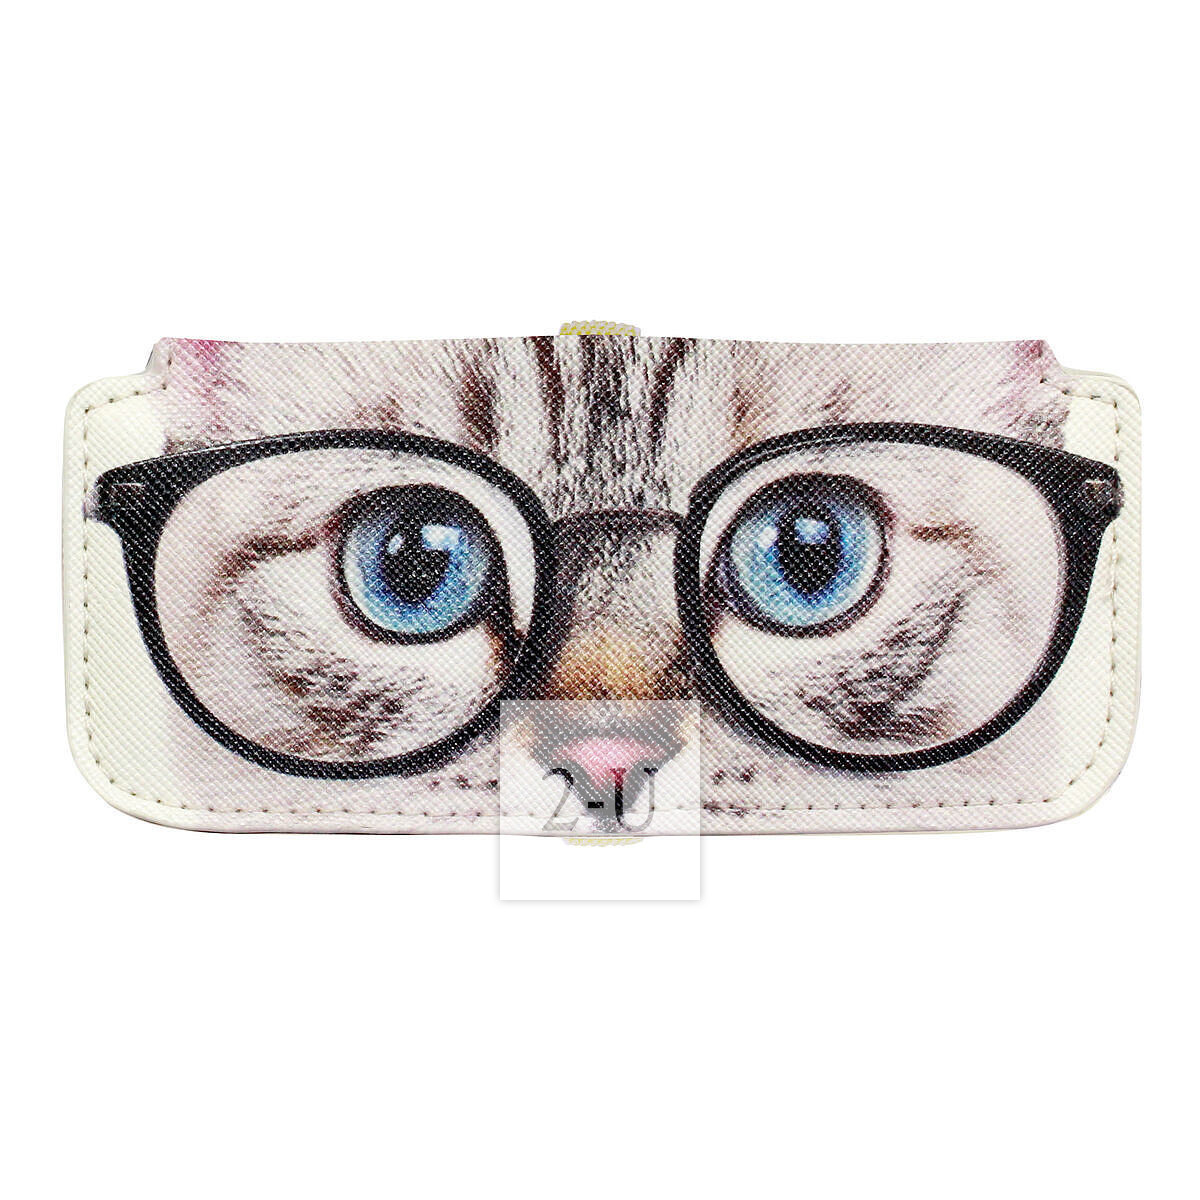 小巧眼鏡盒 動物圖案之美國短毛貓